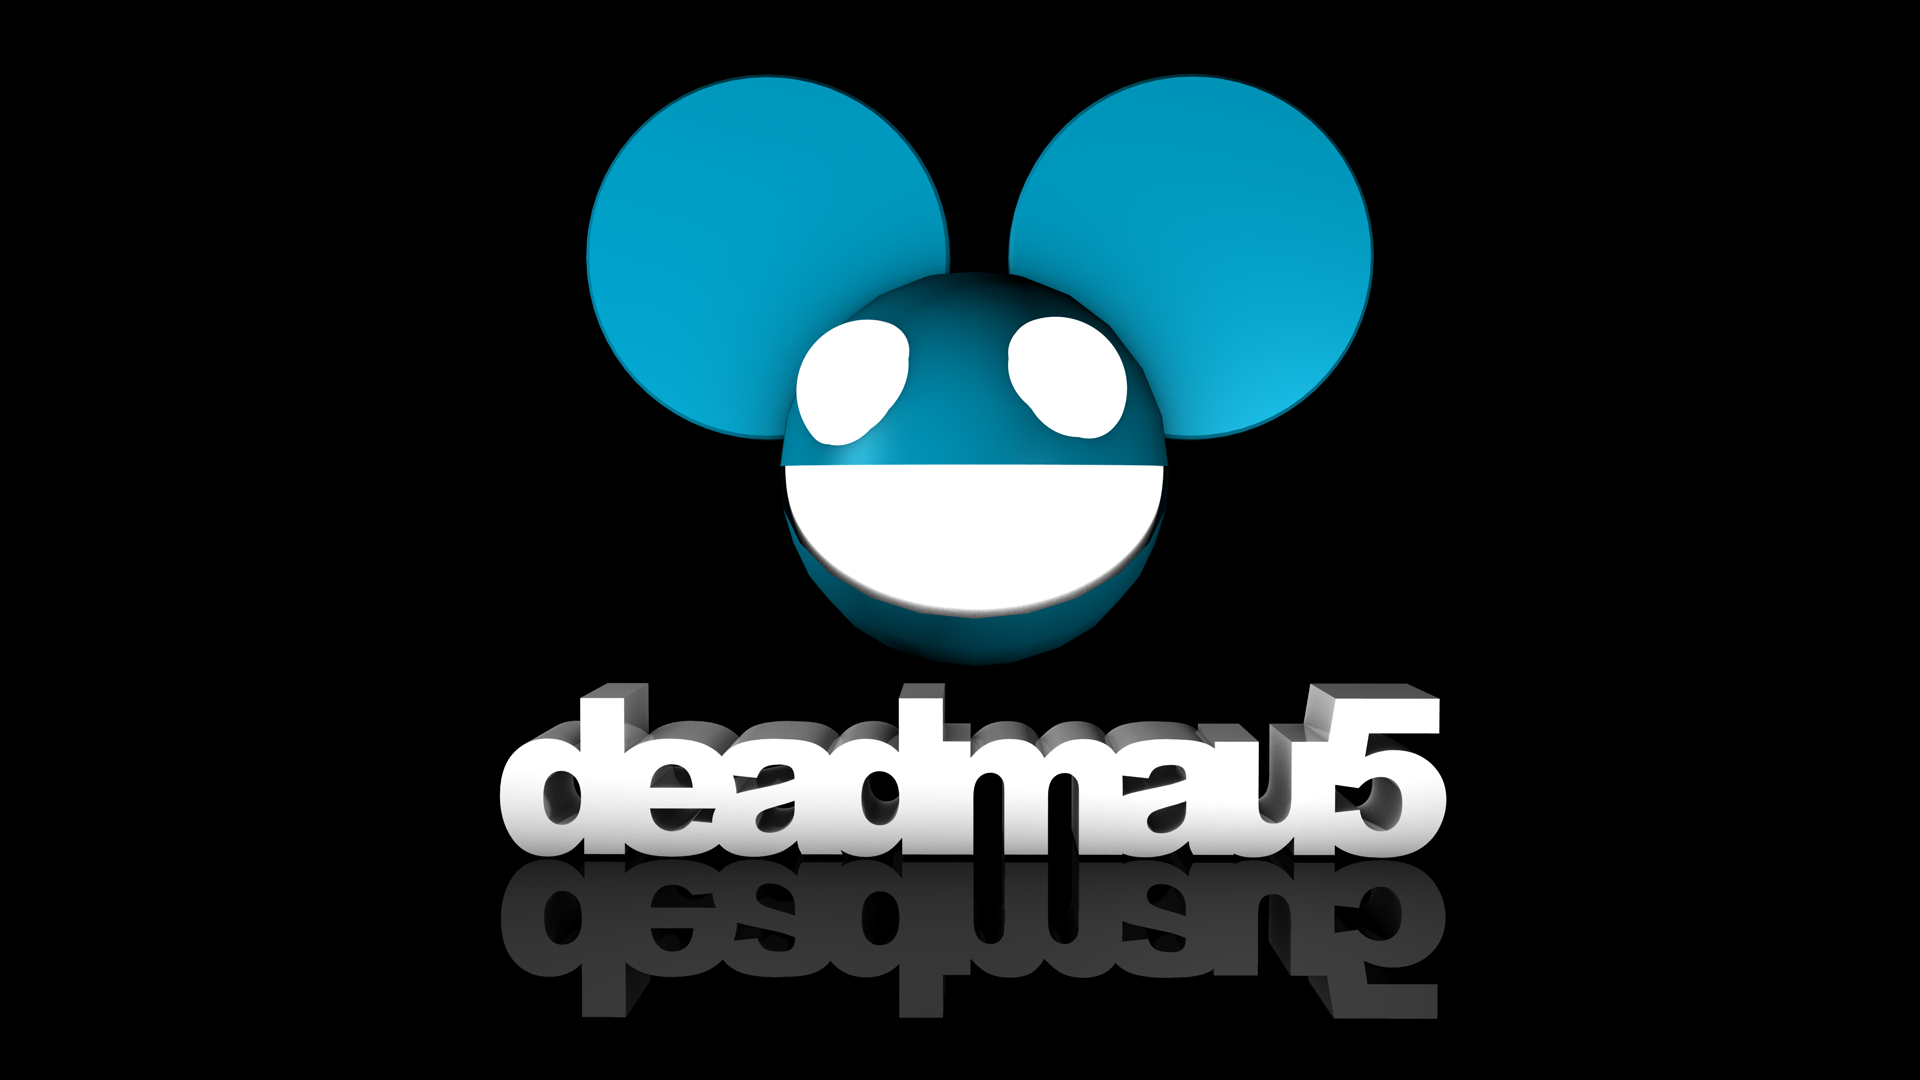 Deadmau5 Pictures